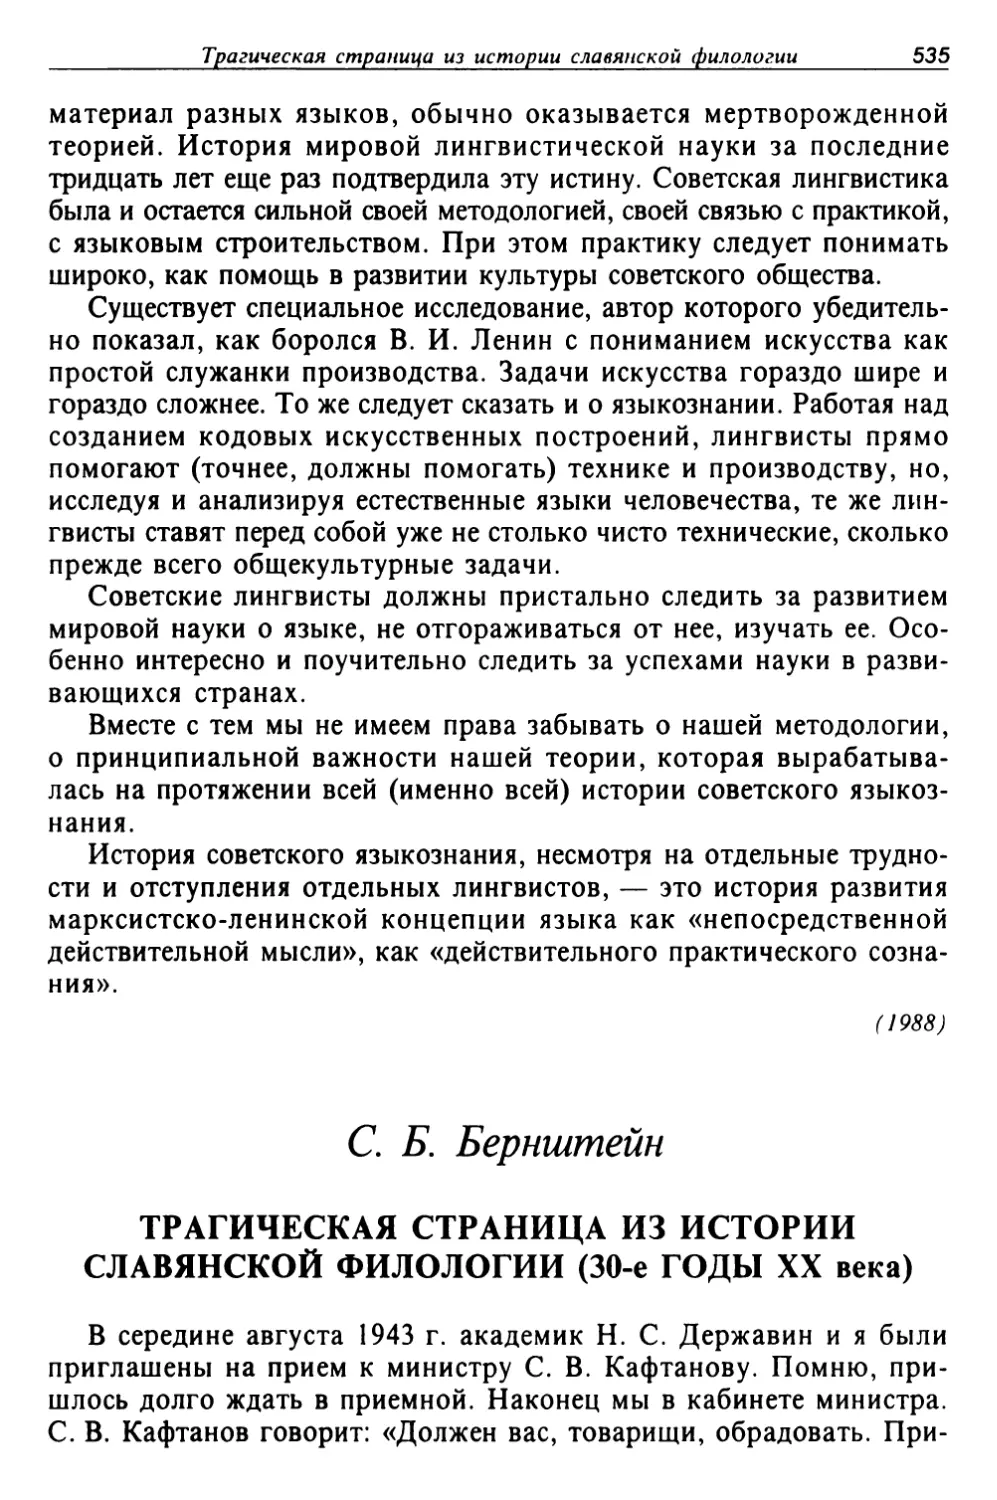 Бернштейн С. Б. Трагическая страница из истории славянской филологии